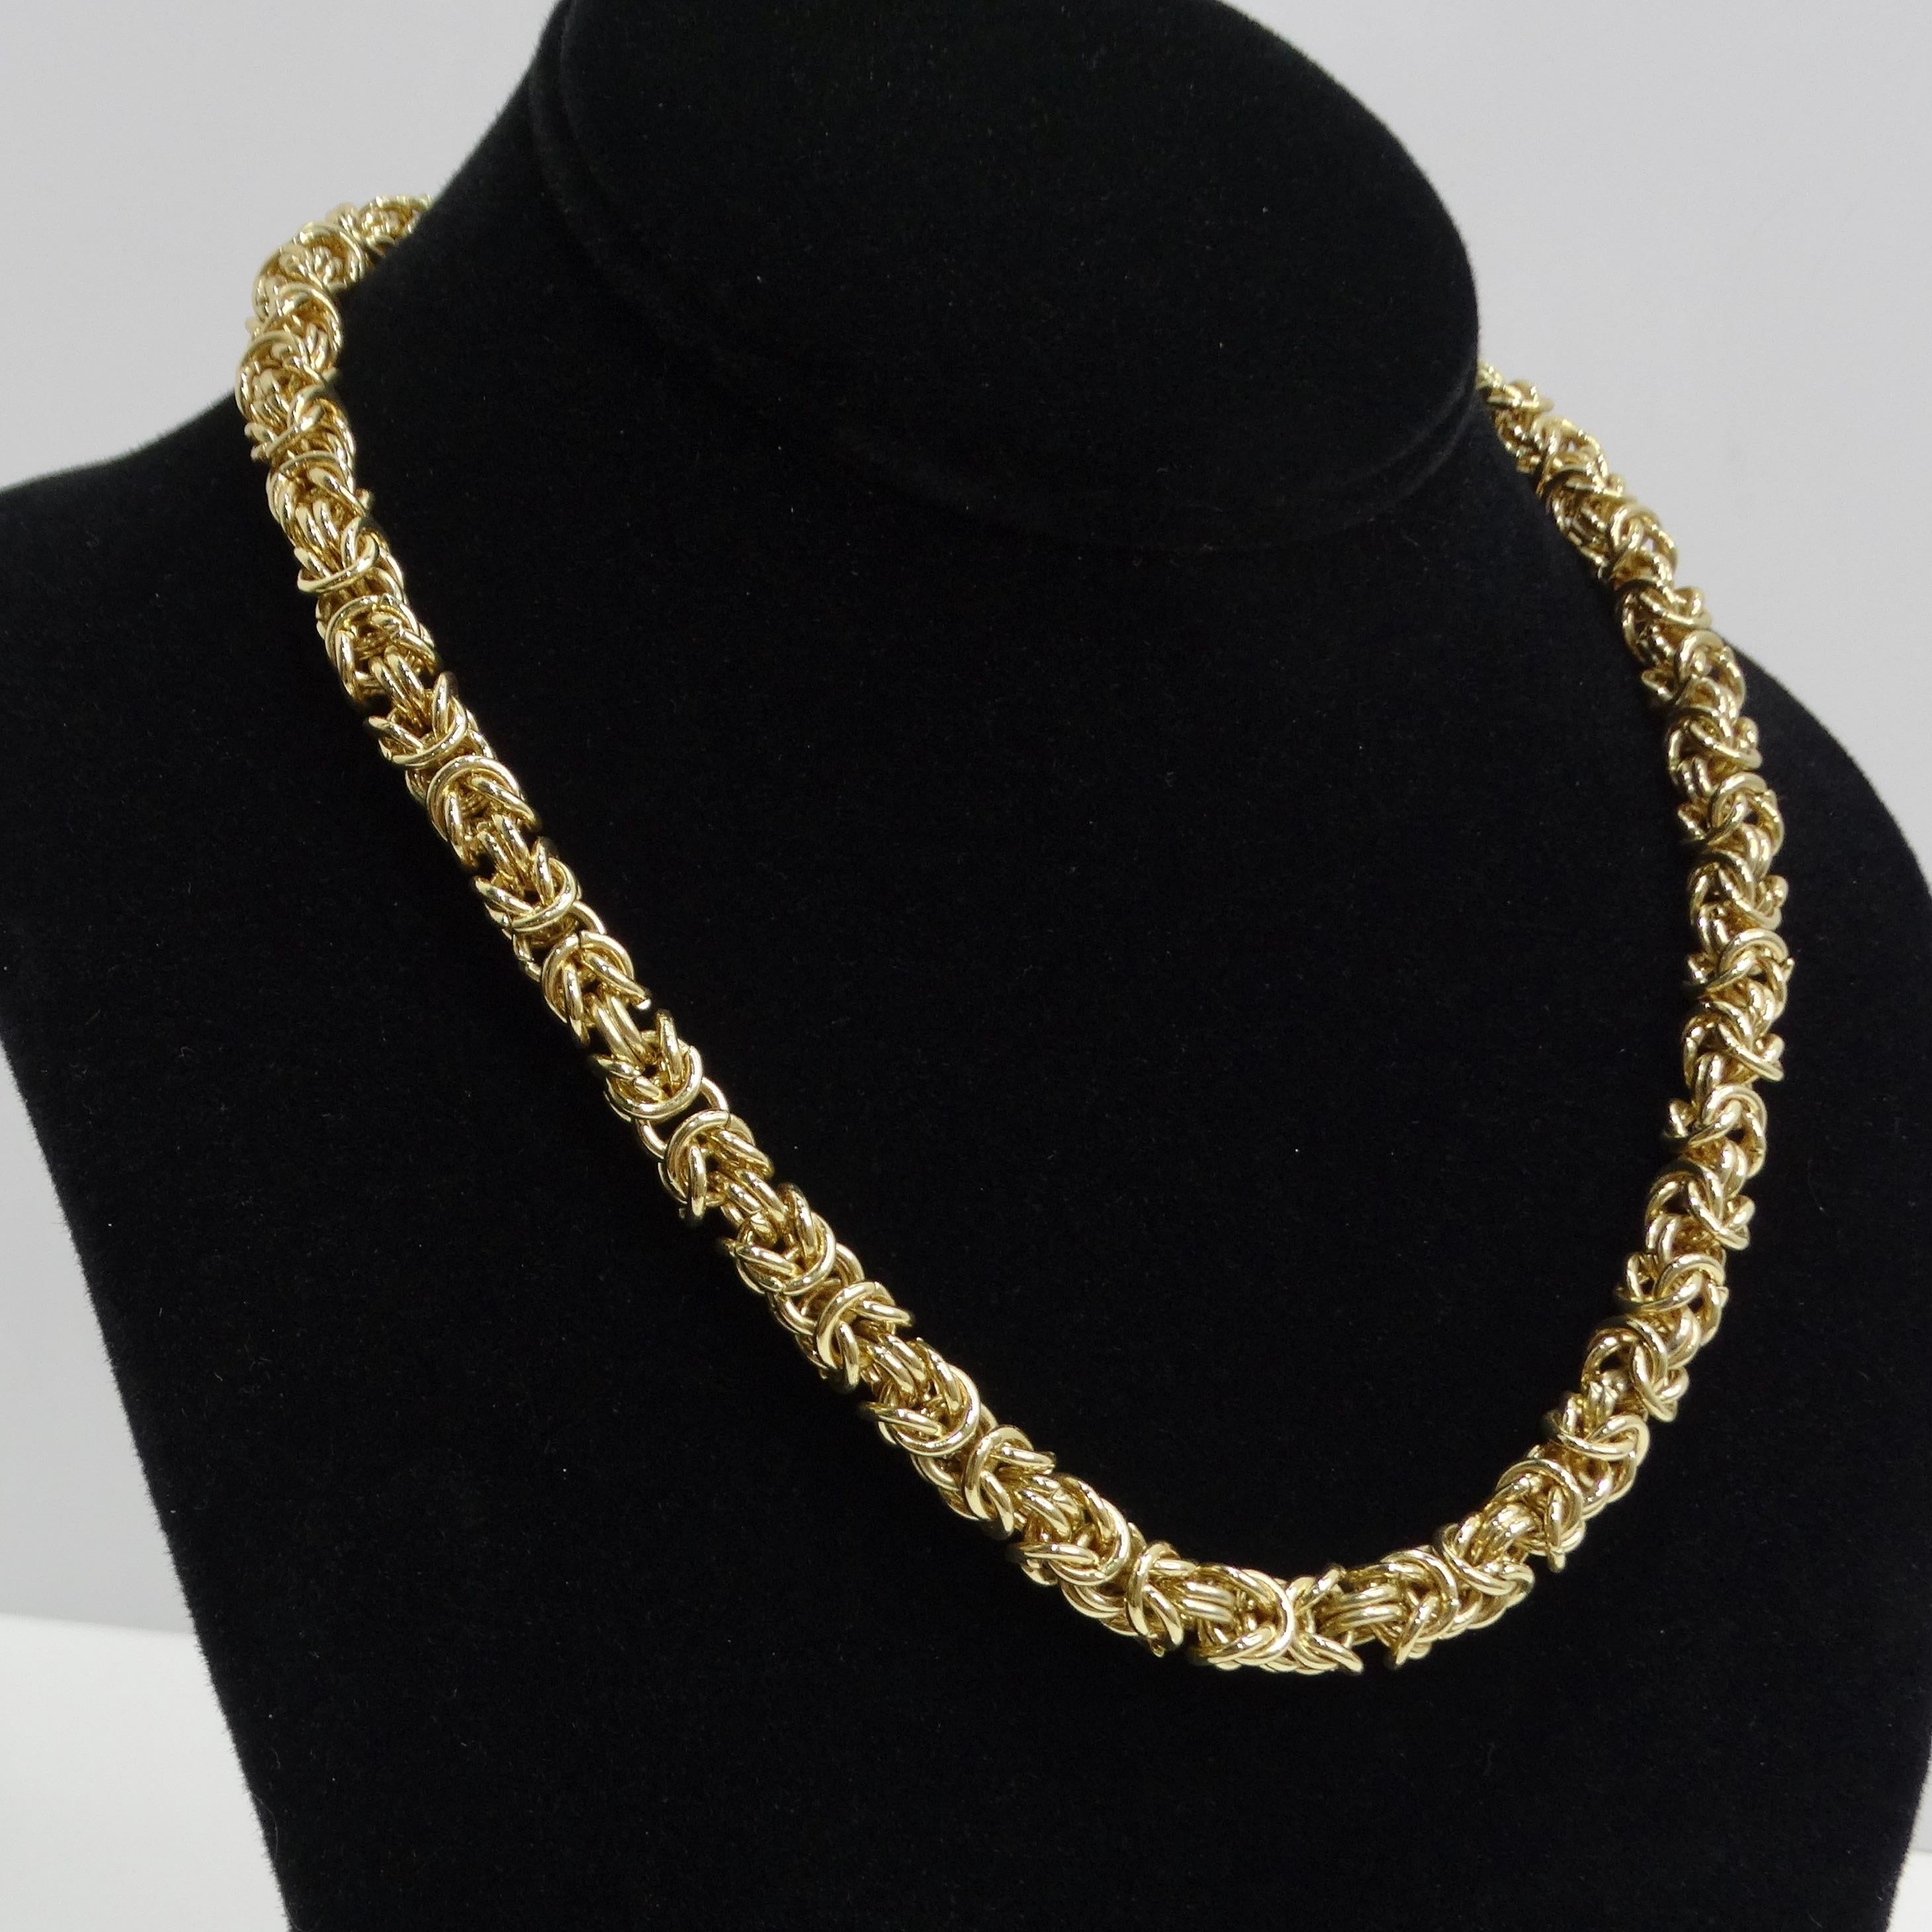 Le collier à chaîne byzantine des années 1980 plaqué or 18 carats est une pièce intemporelle et élégante qui incarne le style byzantin classique. Ce collier vintage présente des liens tissés complexes, créant un design étonnant et détaillé qui